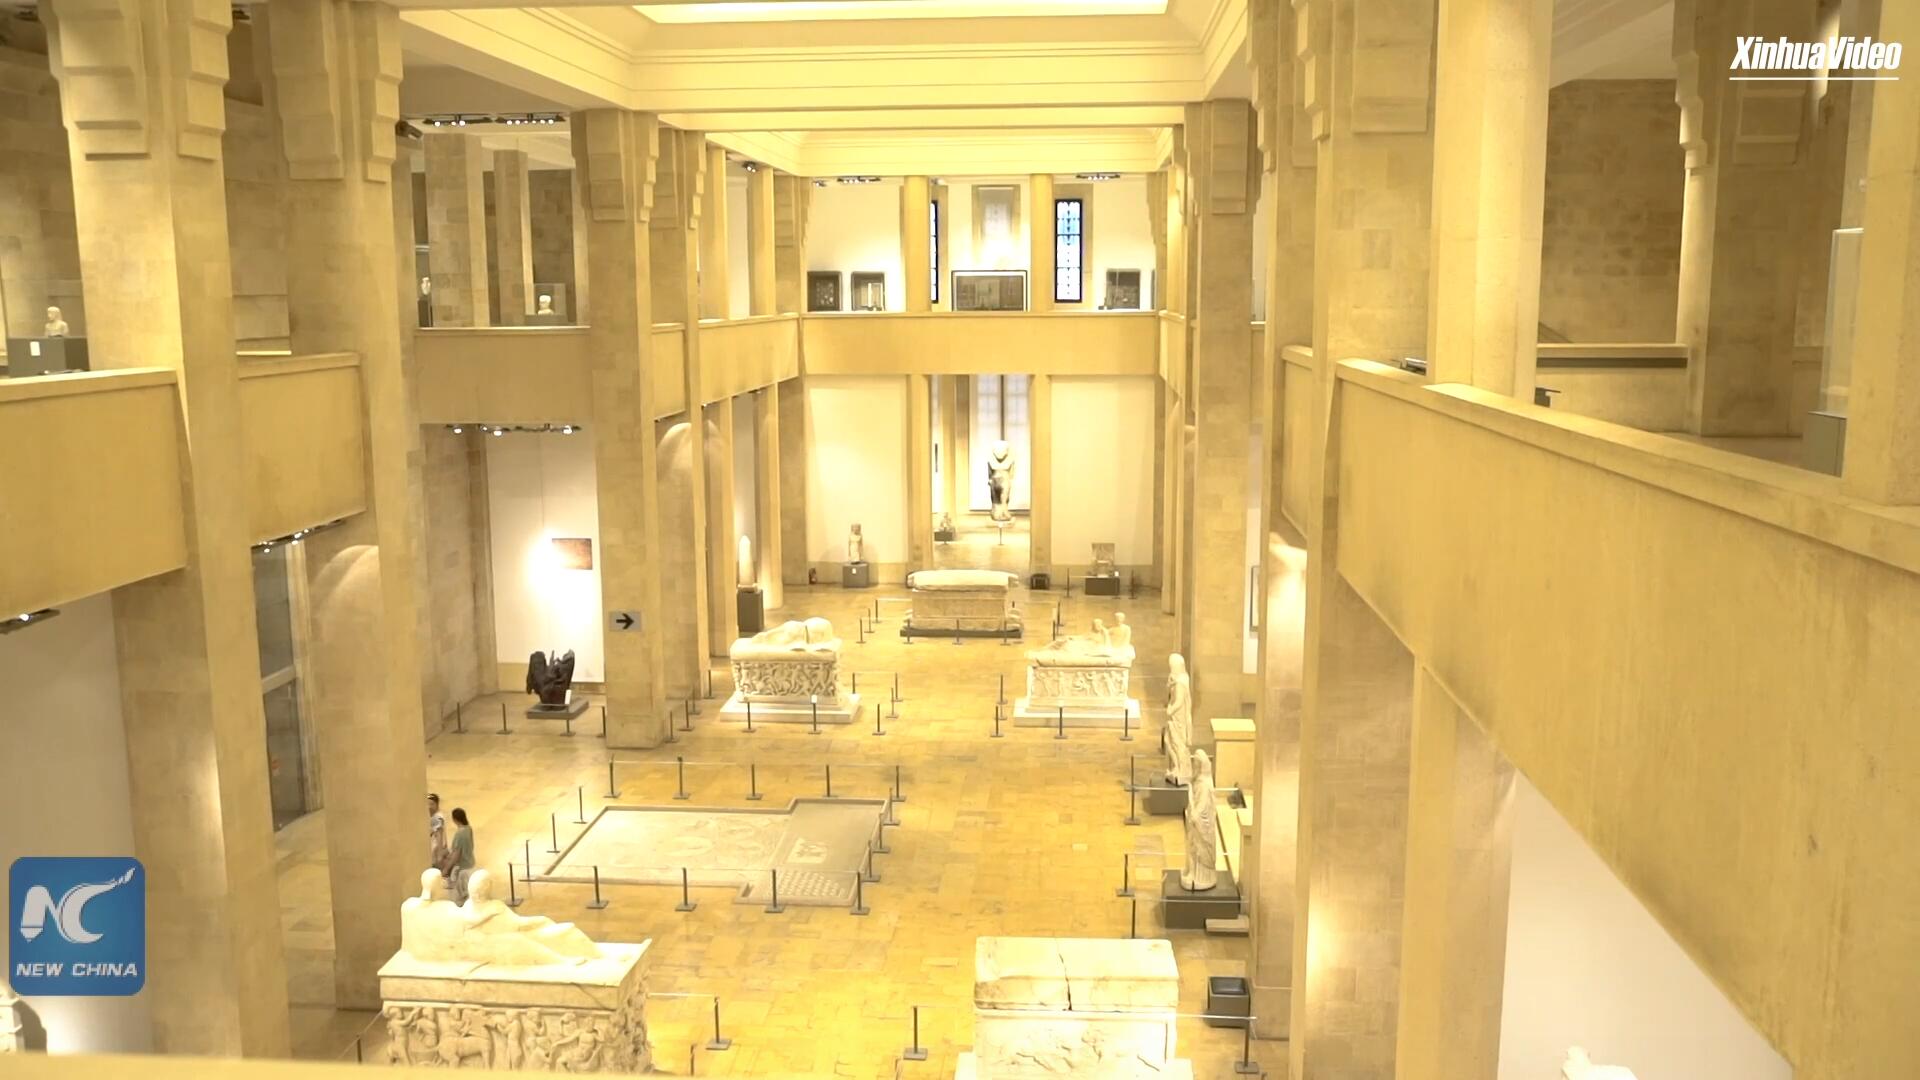 فيديو: لبنان يسمح بمجانية الدخول إلى المقاصد الثقافية والمتاحف لمدة 10 أيام